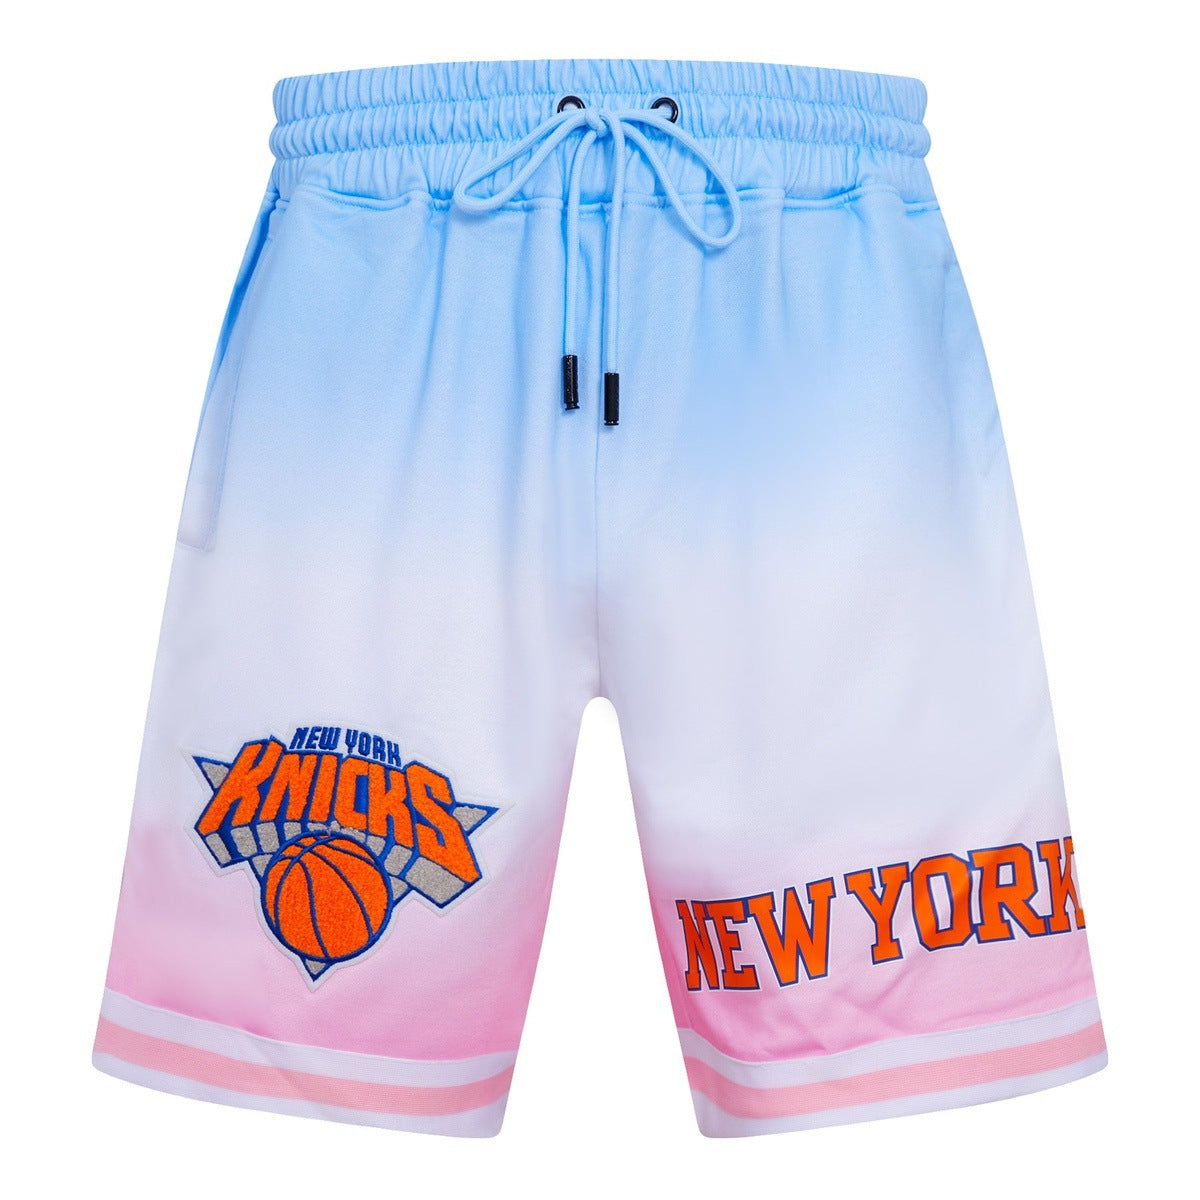 NBA NEW YORK KNICKS LOGO PRO TEAM MEN'S SHORT (BLUE/WHITE/PINK)